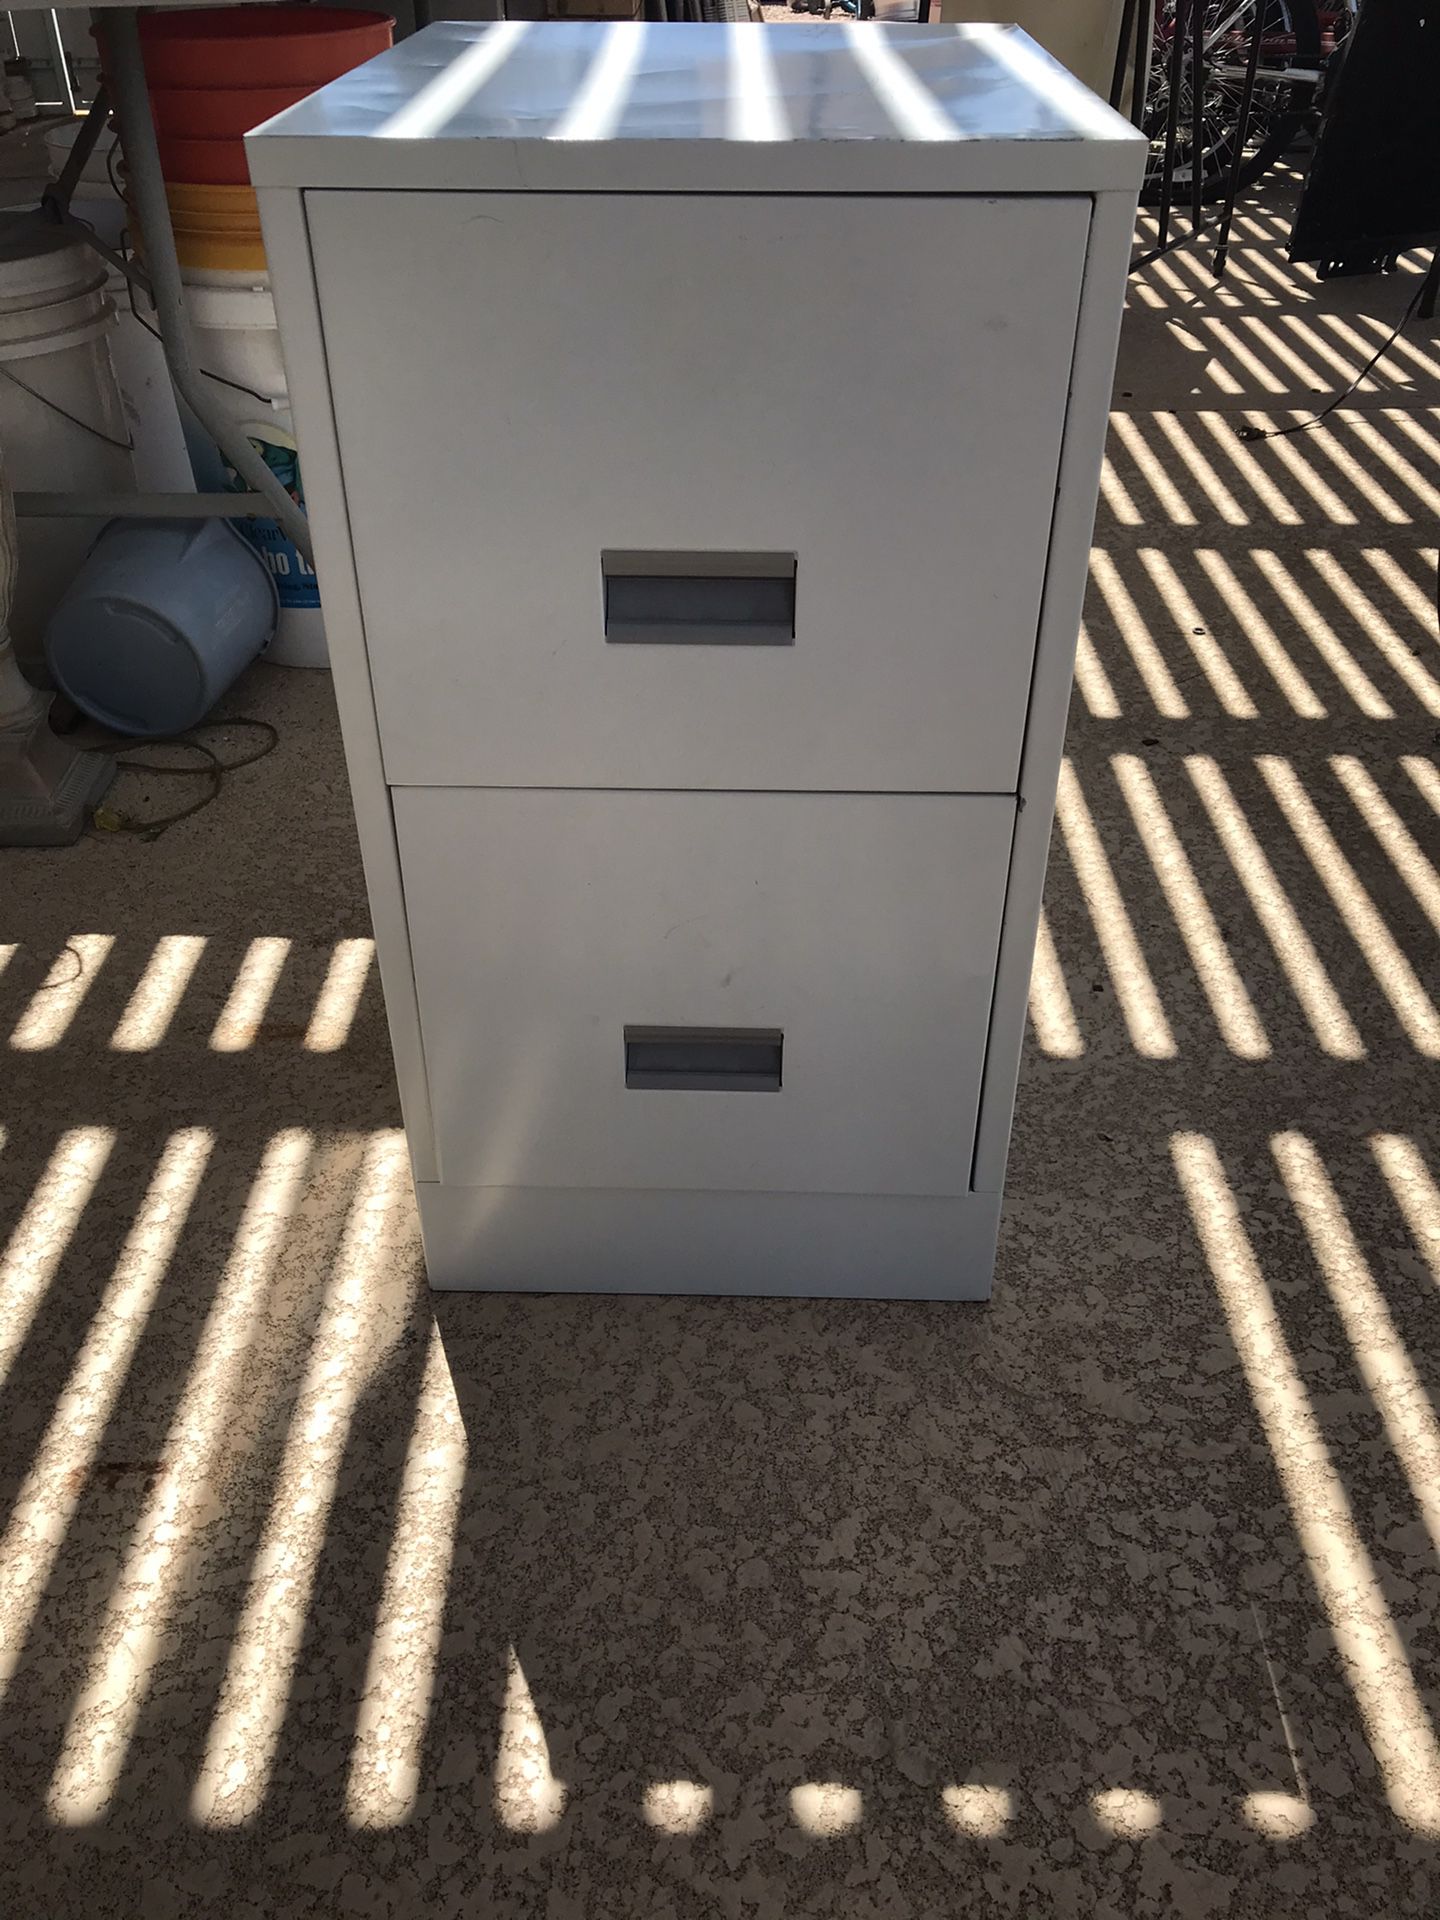 Small file cabinet